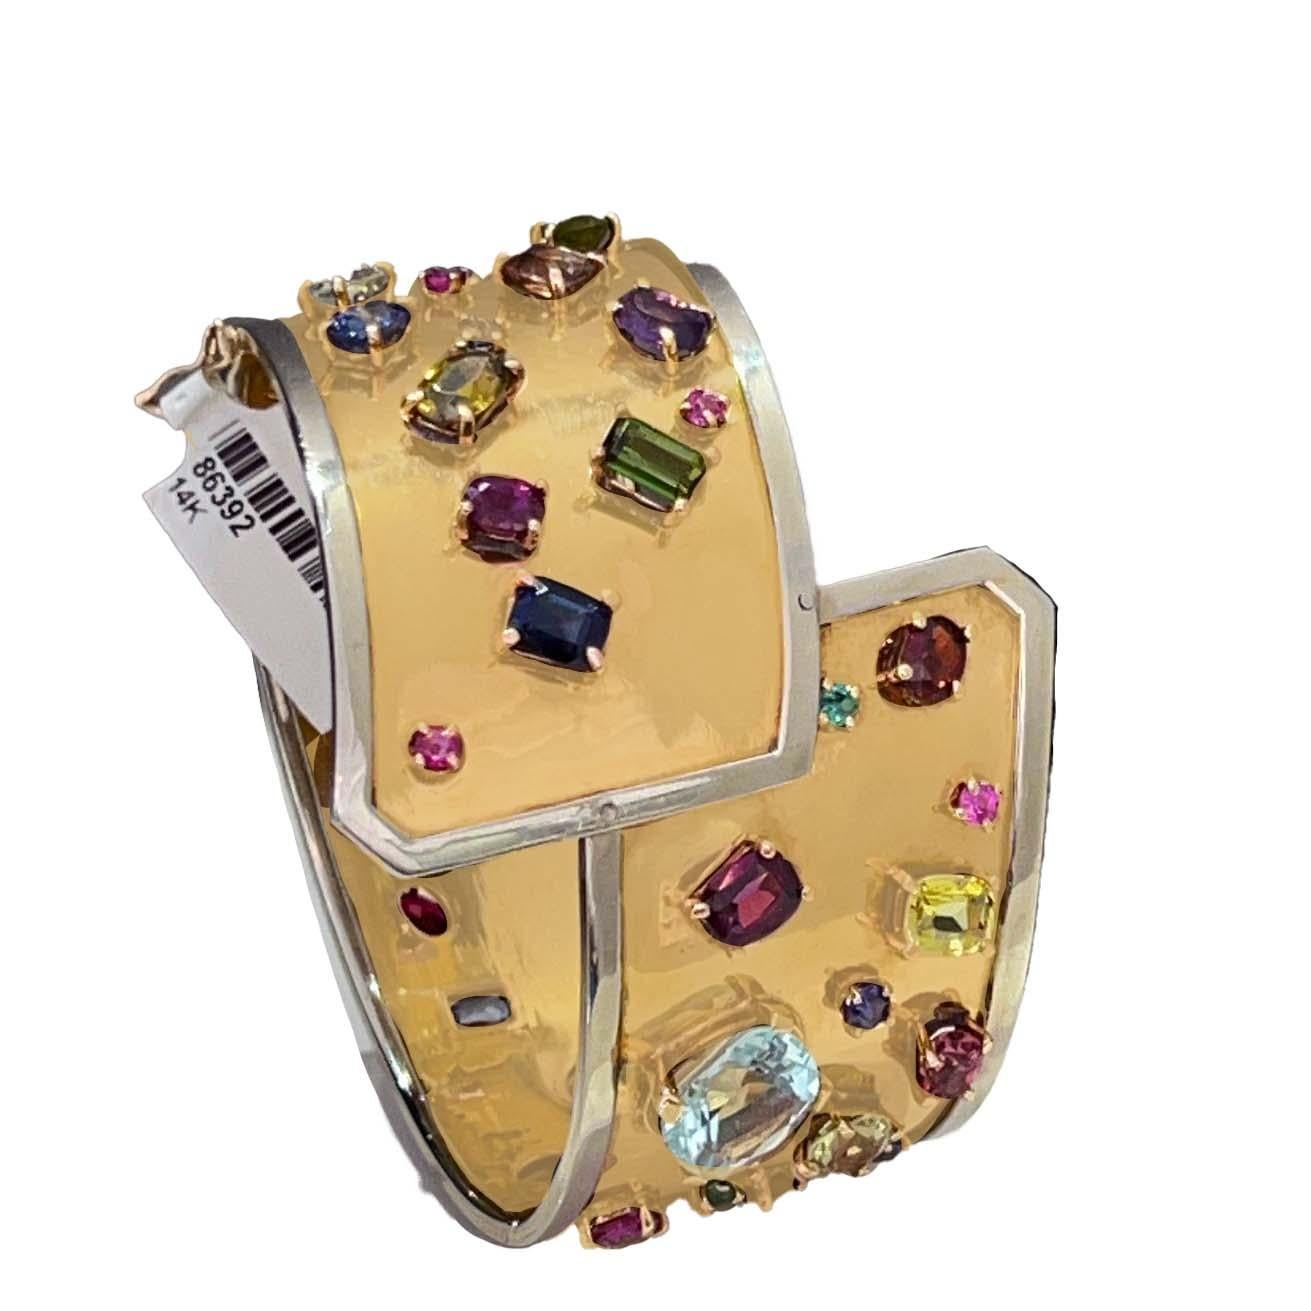 Diese 1970er Jahre 14 Karat Gelbgold multicolor semi kostbaren Edelstein Manschette Armband. Ein fesselndes Motiv aus Gelbgold, das mit leuchtenden Edelsteinen besetzt ist, sorgt für einen dynamischen und auffälligen Look. Der Rand des Armbands ist